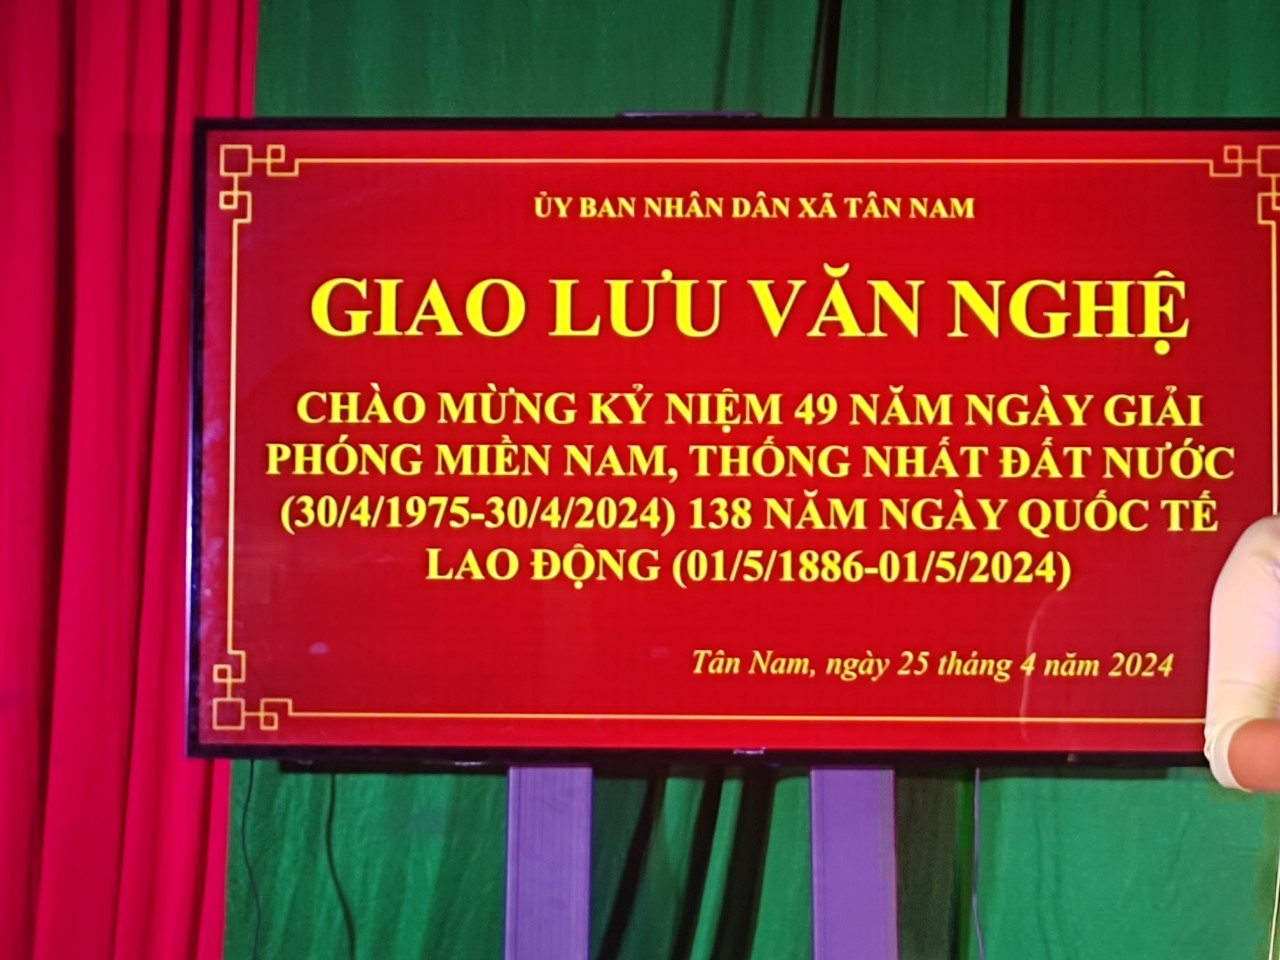 xã Tân Nam tổ chức đêm giao lưu văn nghệ